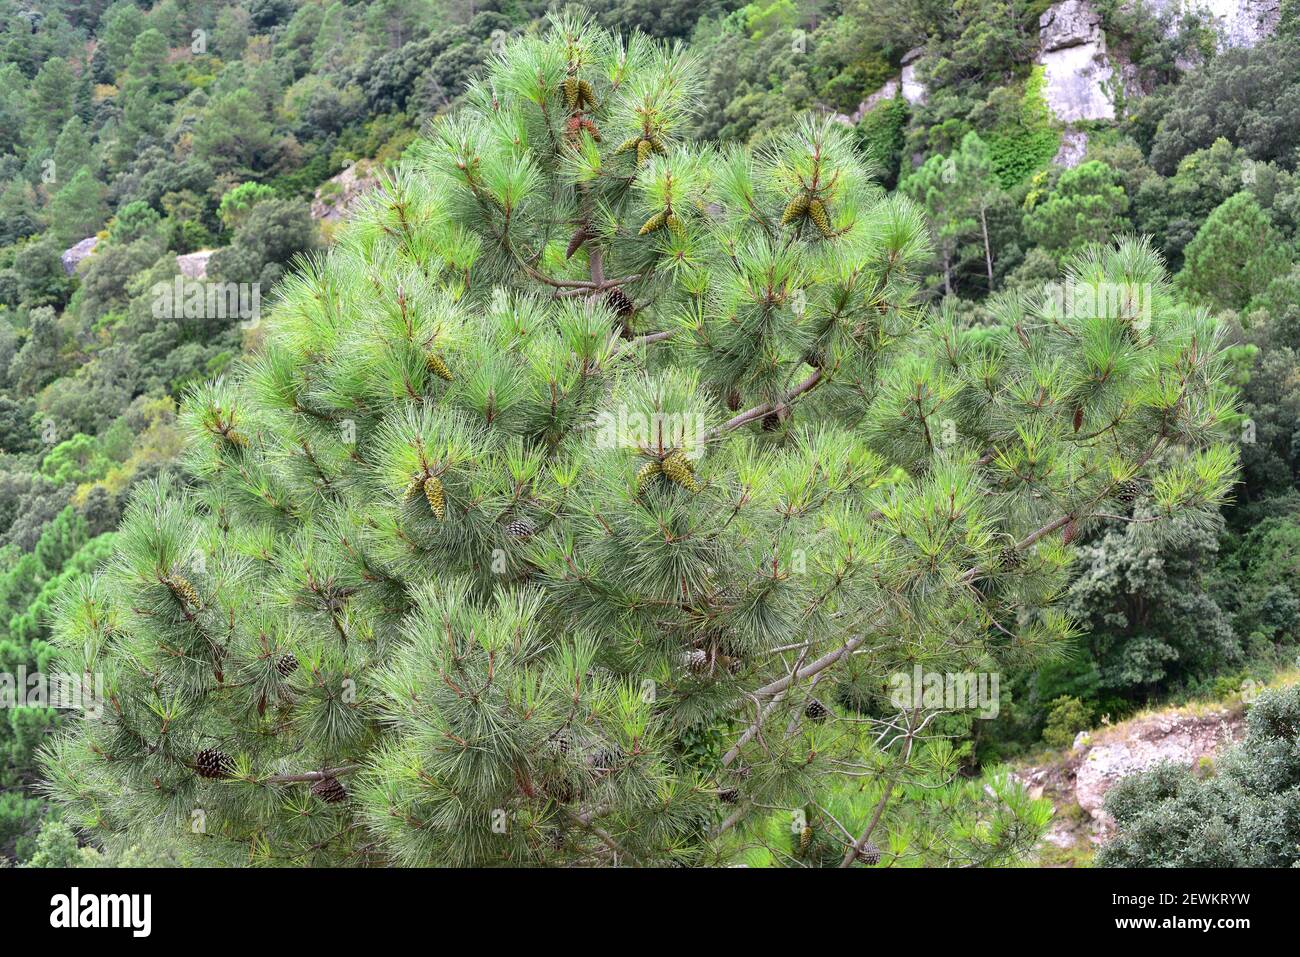 El pino negro (Pinus nigra salzmannii) es un árbol de coníferas perenne nativo de la región mediterránea occidental. Esta foto fue tomada en las montañas de Montsia, Foto de stock